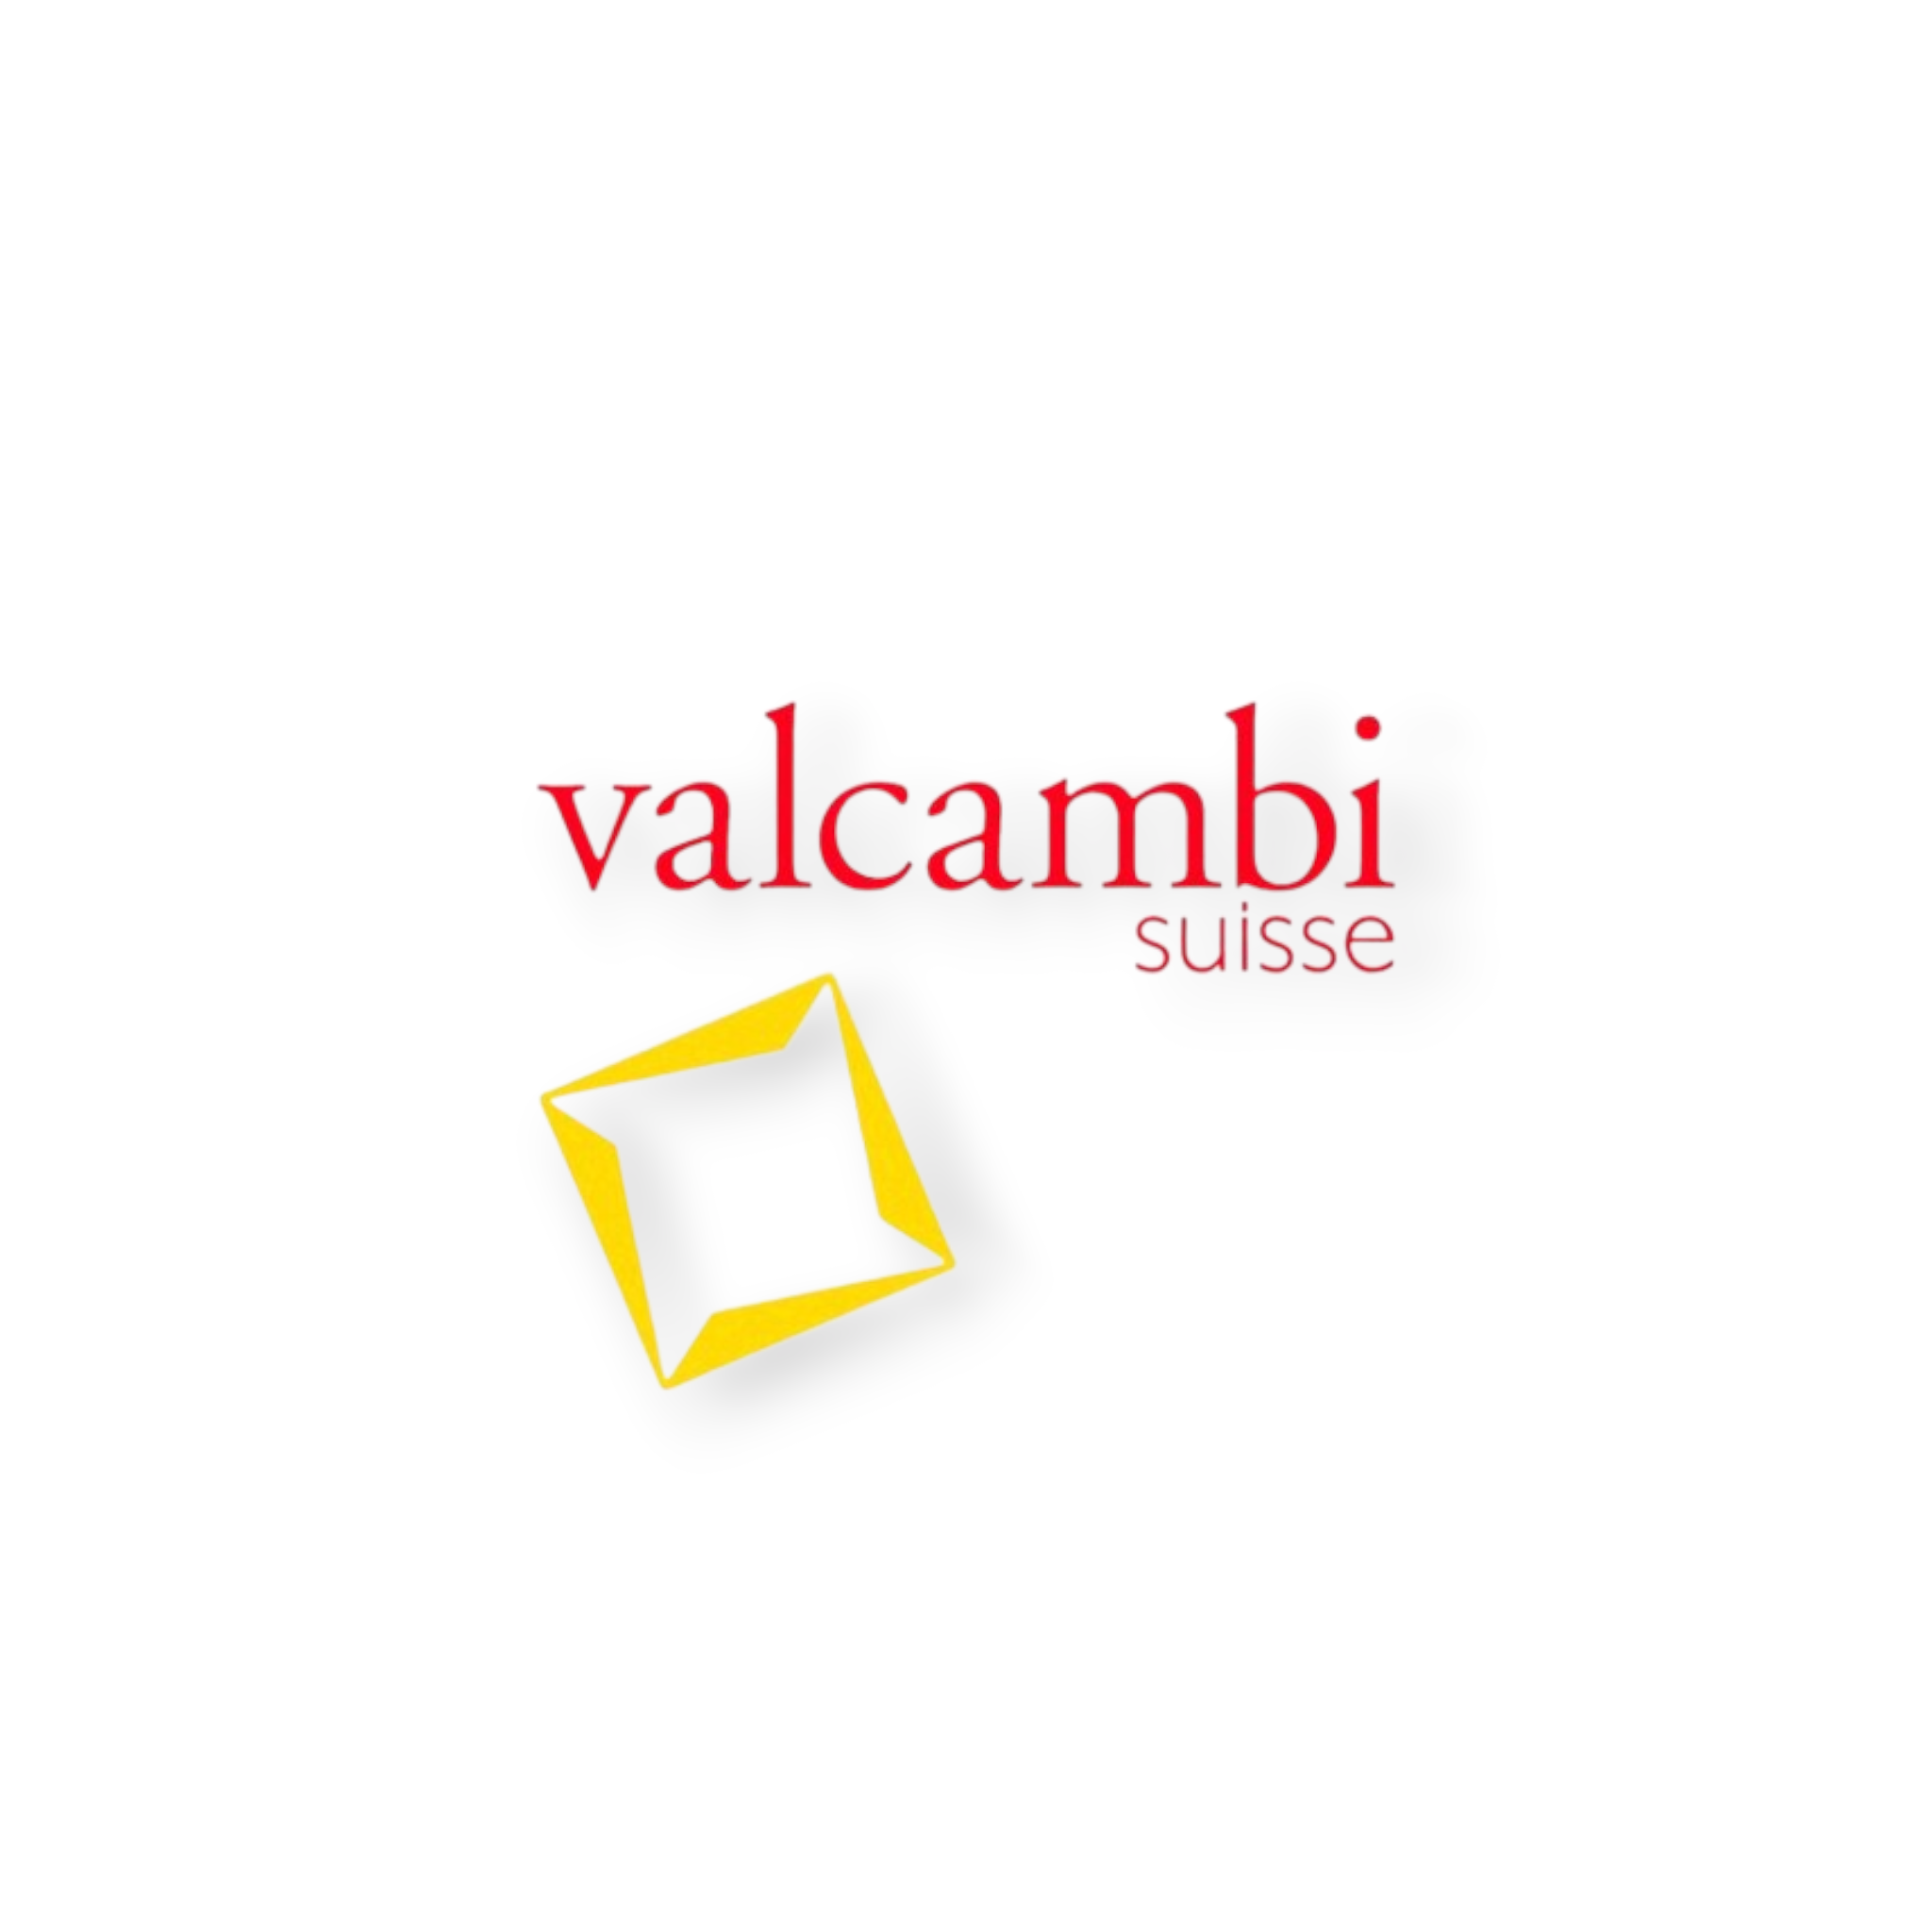 Valcambi Suisse Logo